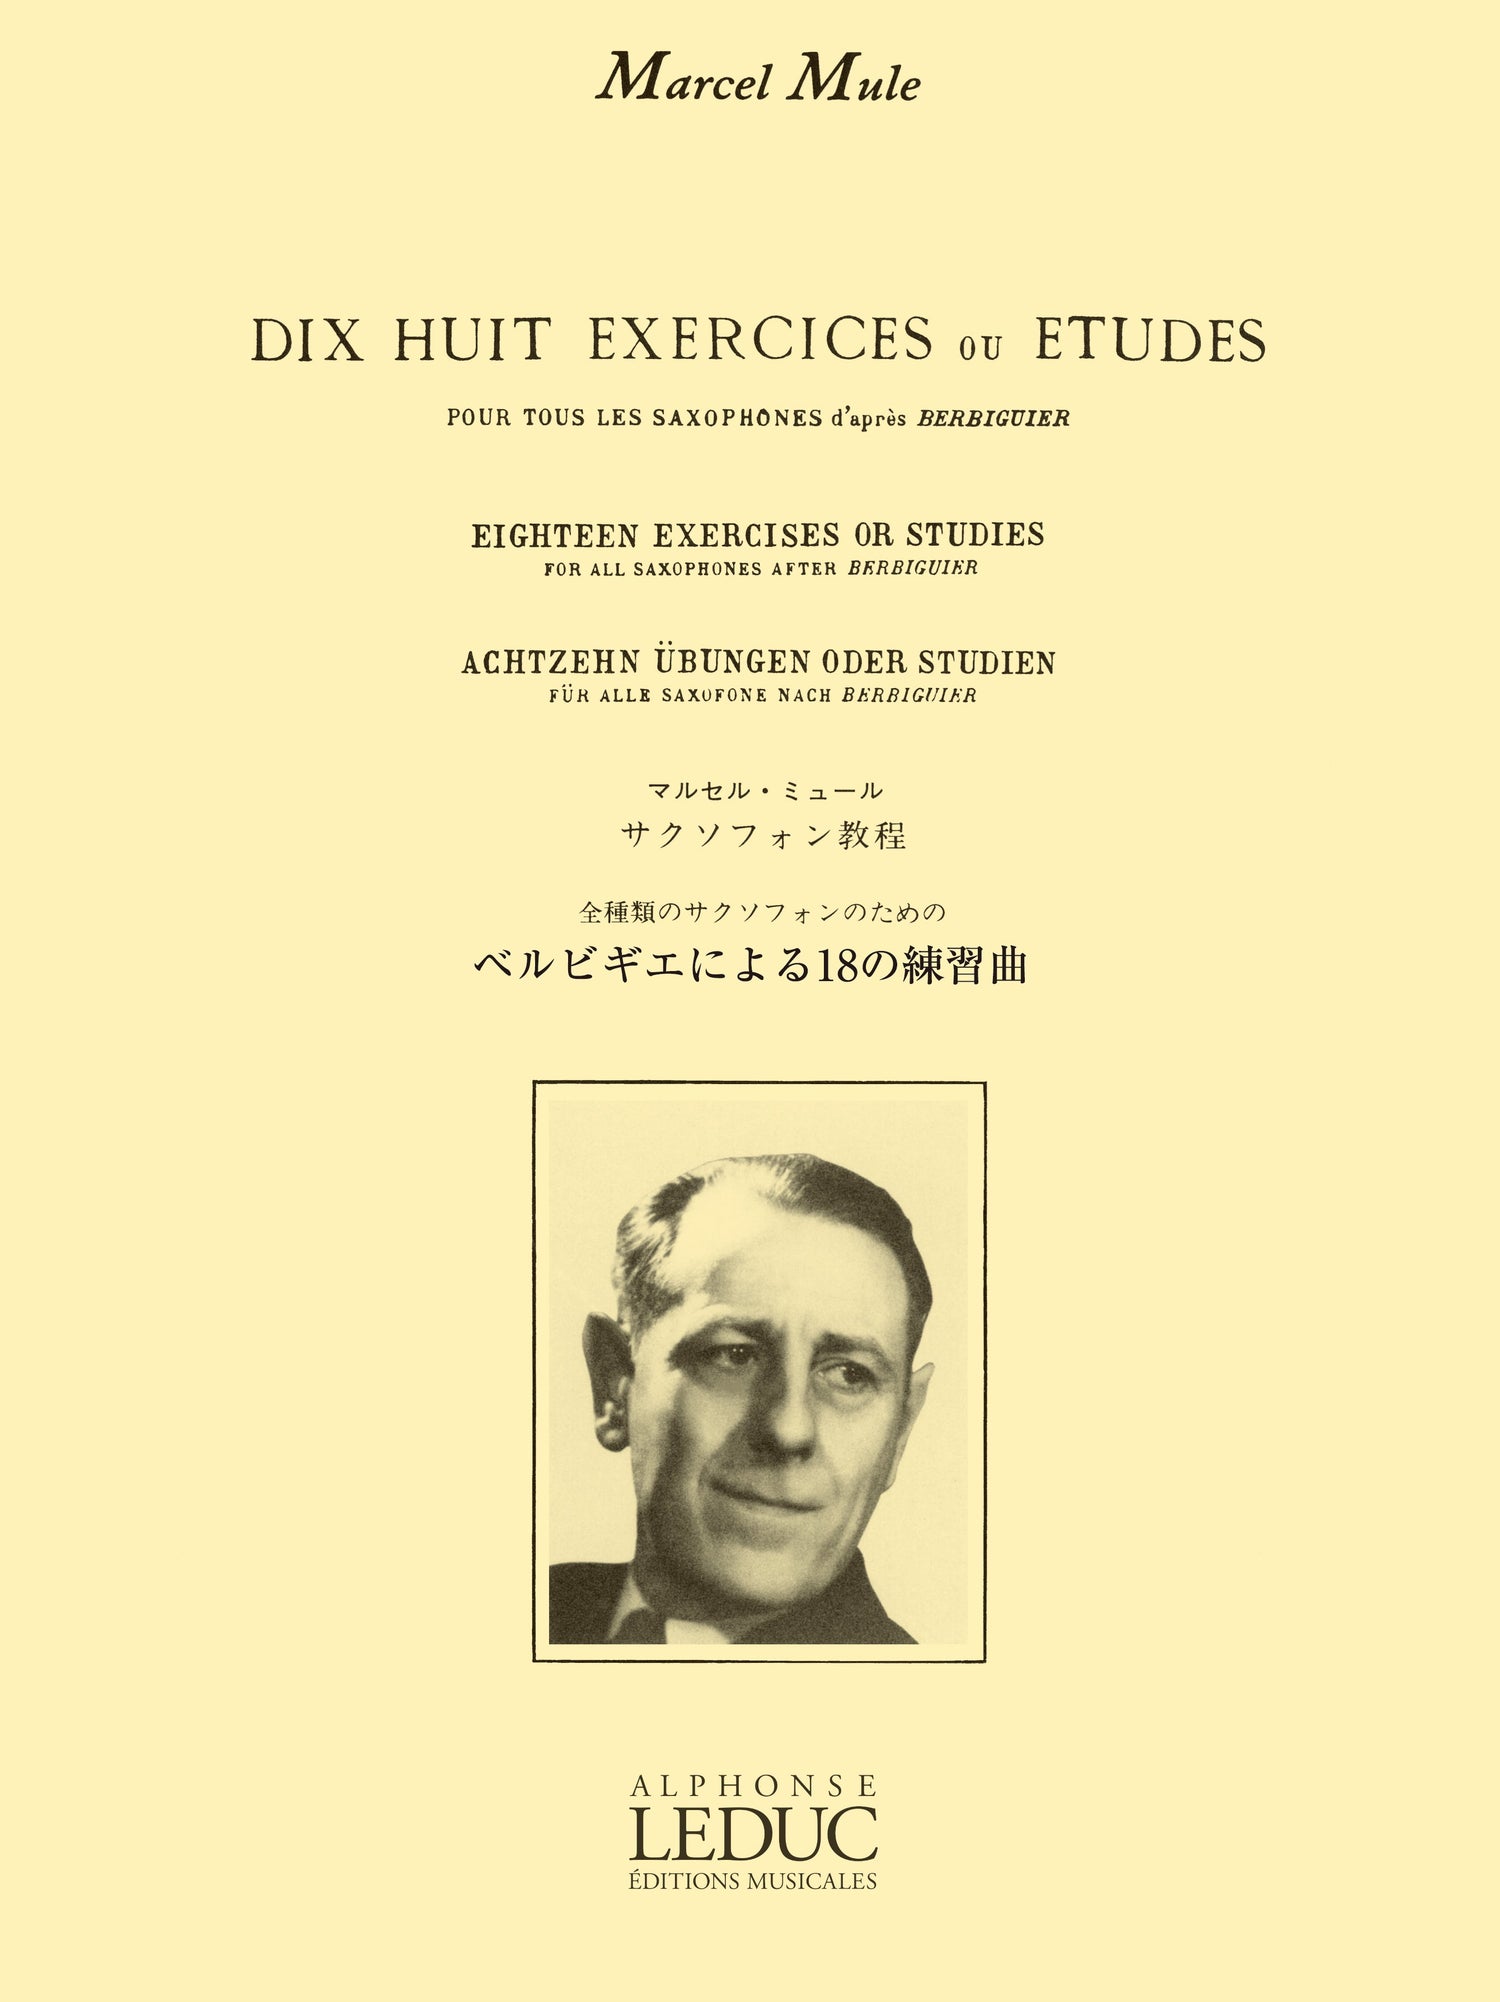 ミュール:ベルビギエによる18の練習曲 ルデュック社ライセンス版